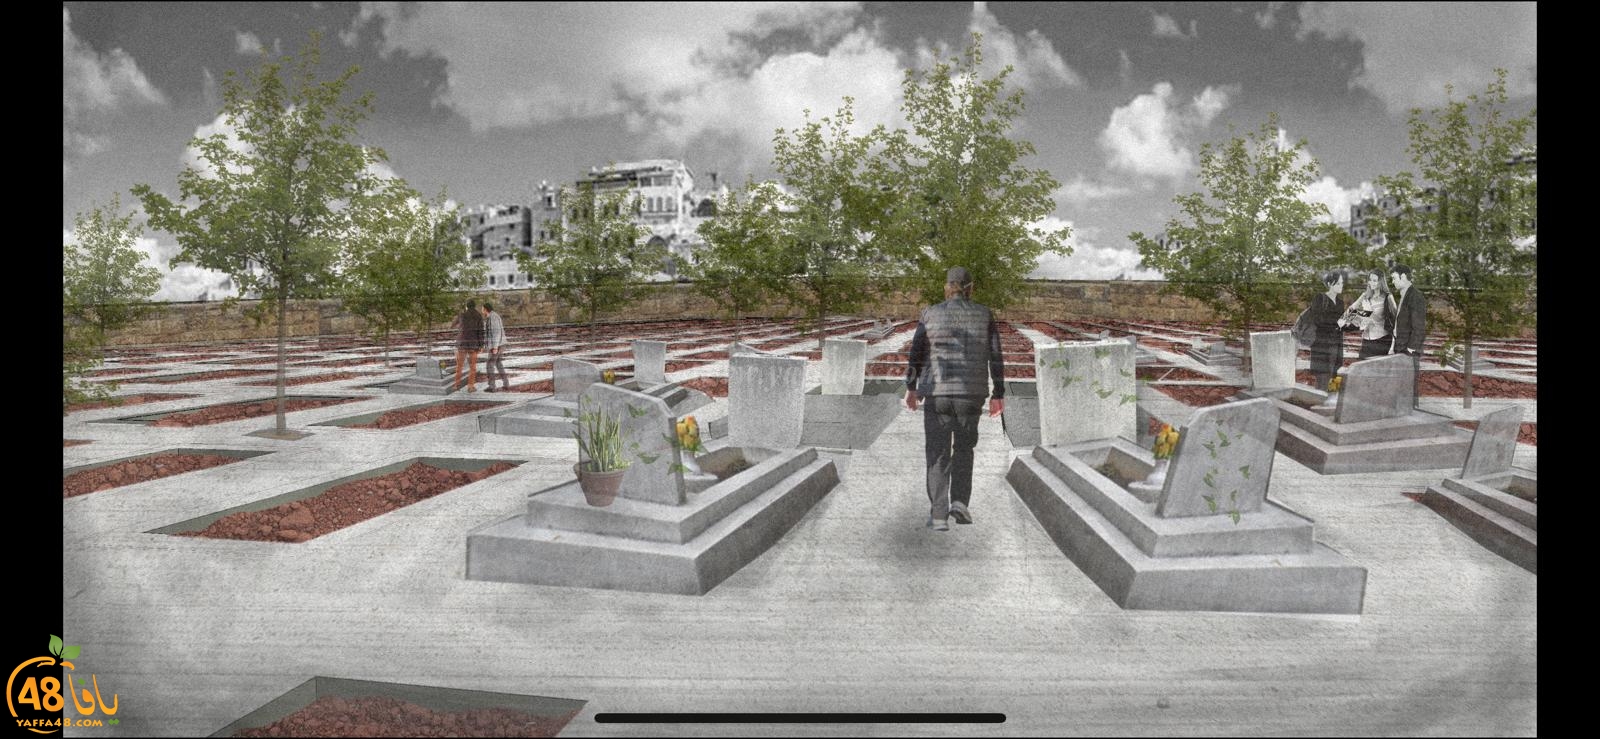  فيديو: ساهم معنا في حملة بناء أضخم مسطح لدفن الموتى في مقبرة طاسو الاسلامية بيافا